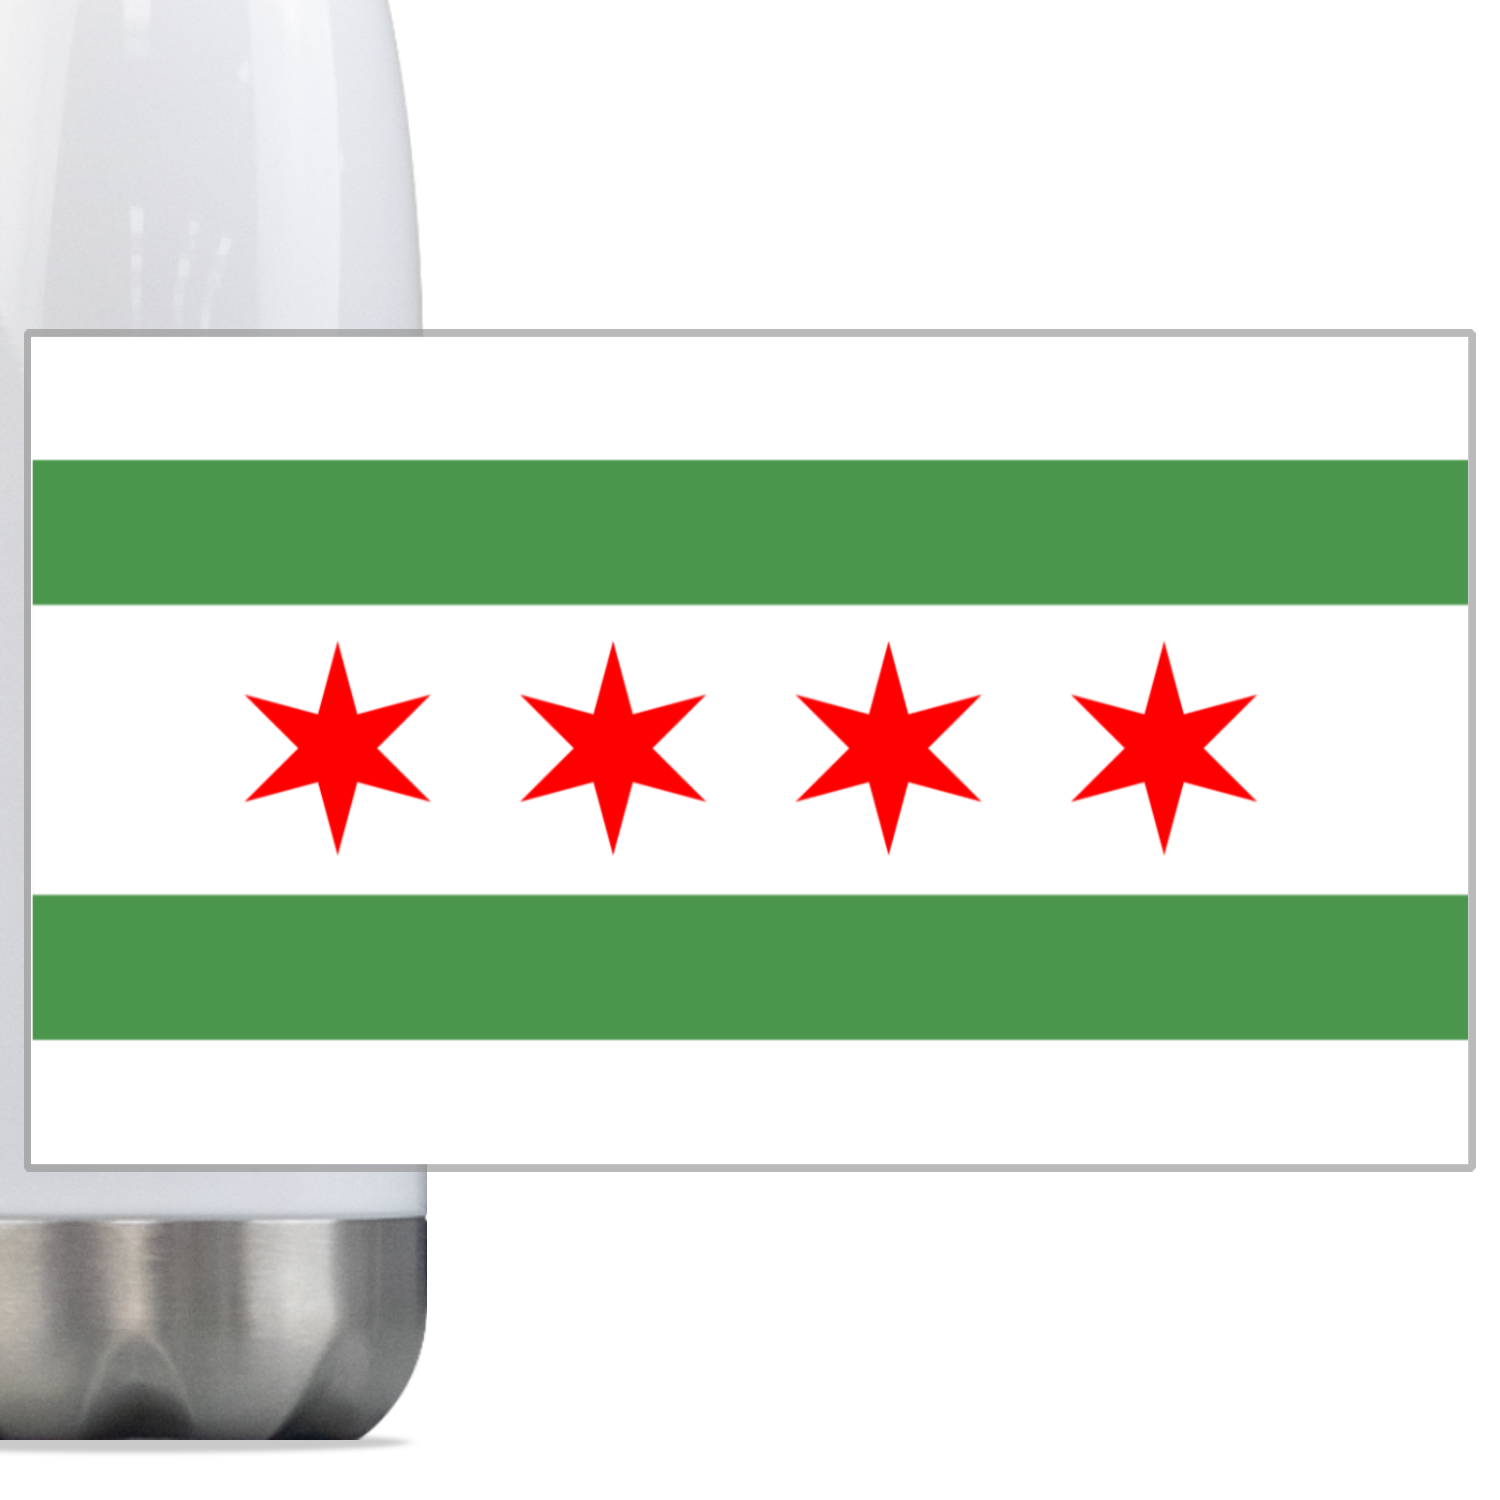 Chicago Flag Green River Steel Slim Water Bottle